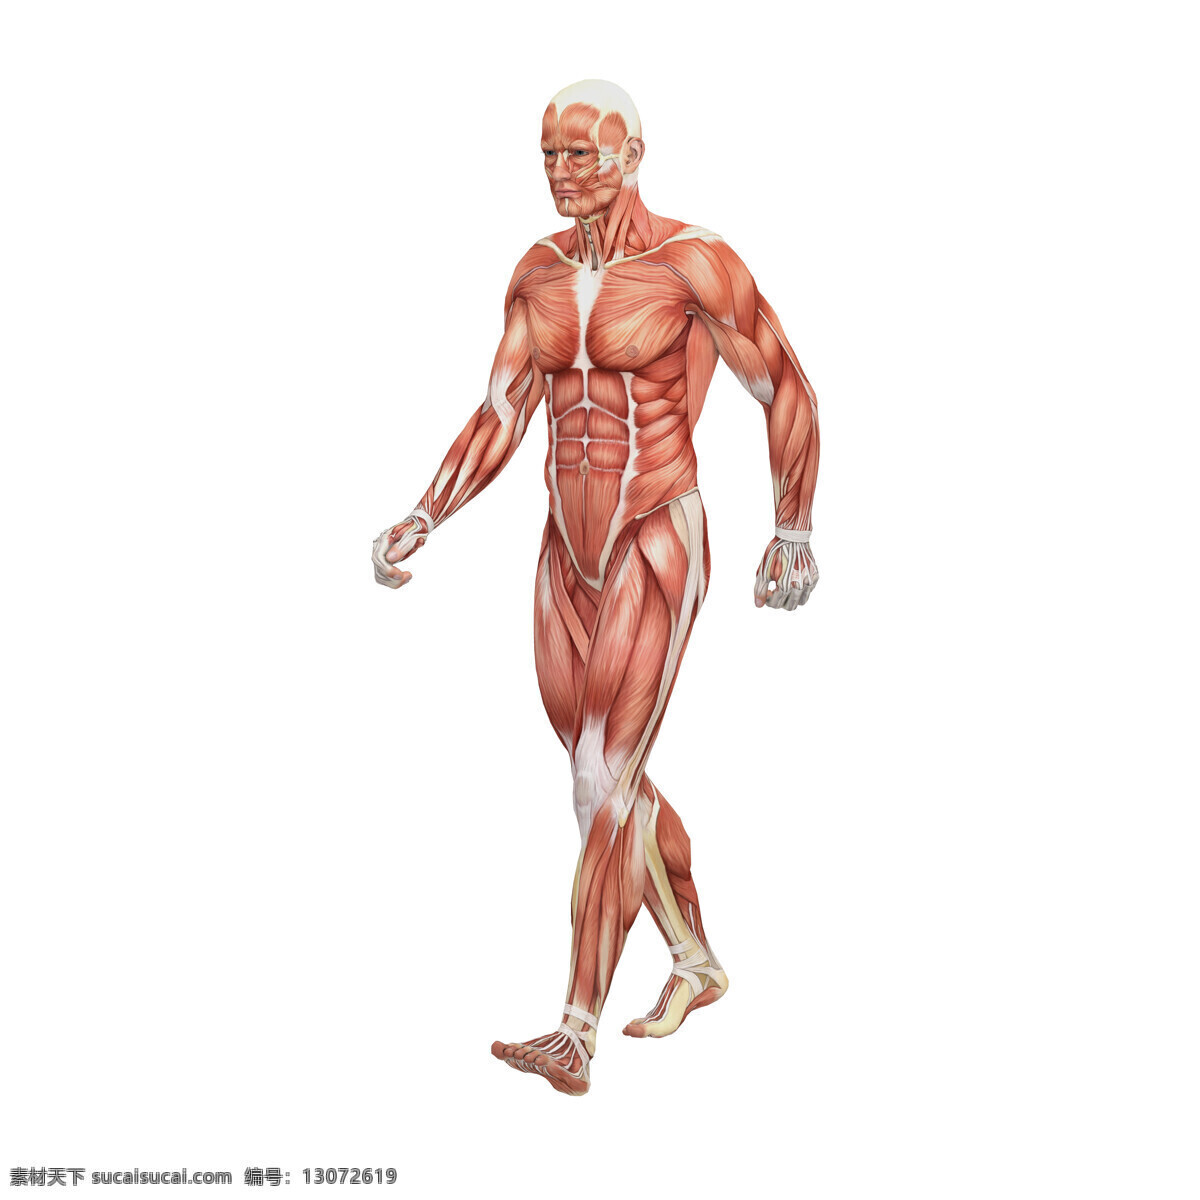 男性 人体 肌肉 组织 人体解剖学 男性人体 肌肉组织图 医学 医疗护理 人体器官图 人物图片